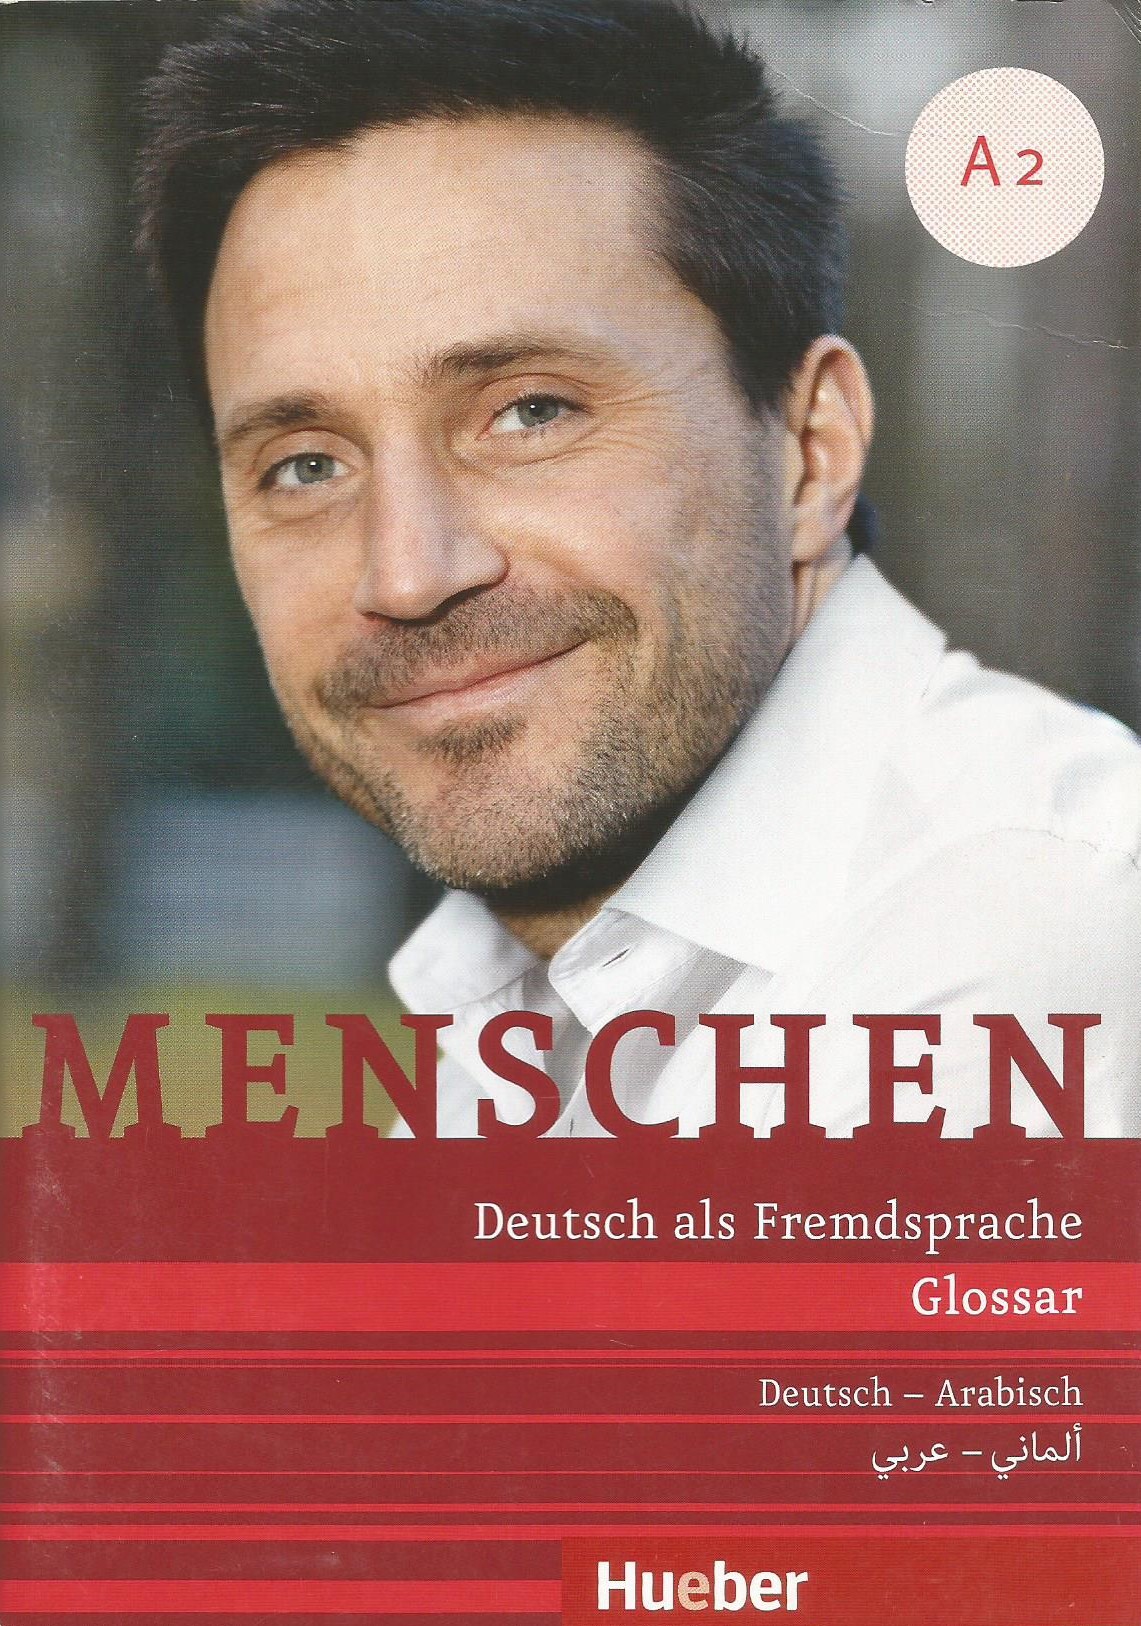 menschen A2 Glossar ألماني -عربي